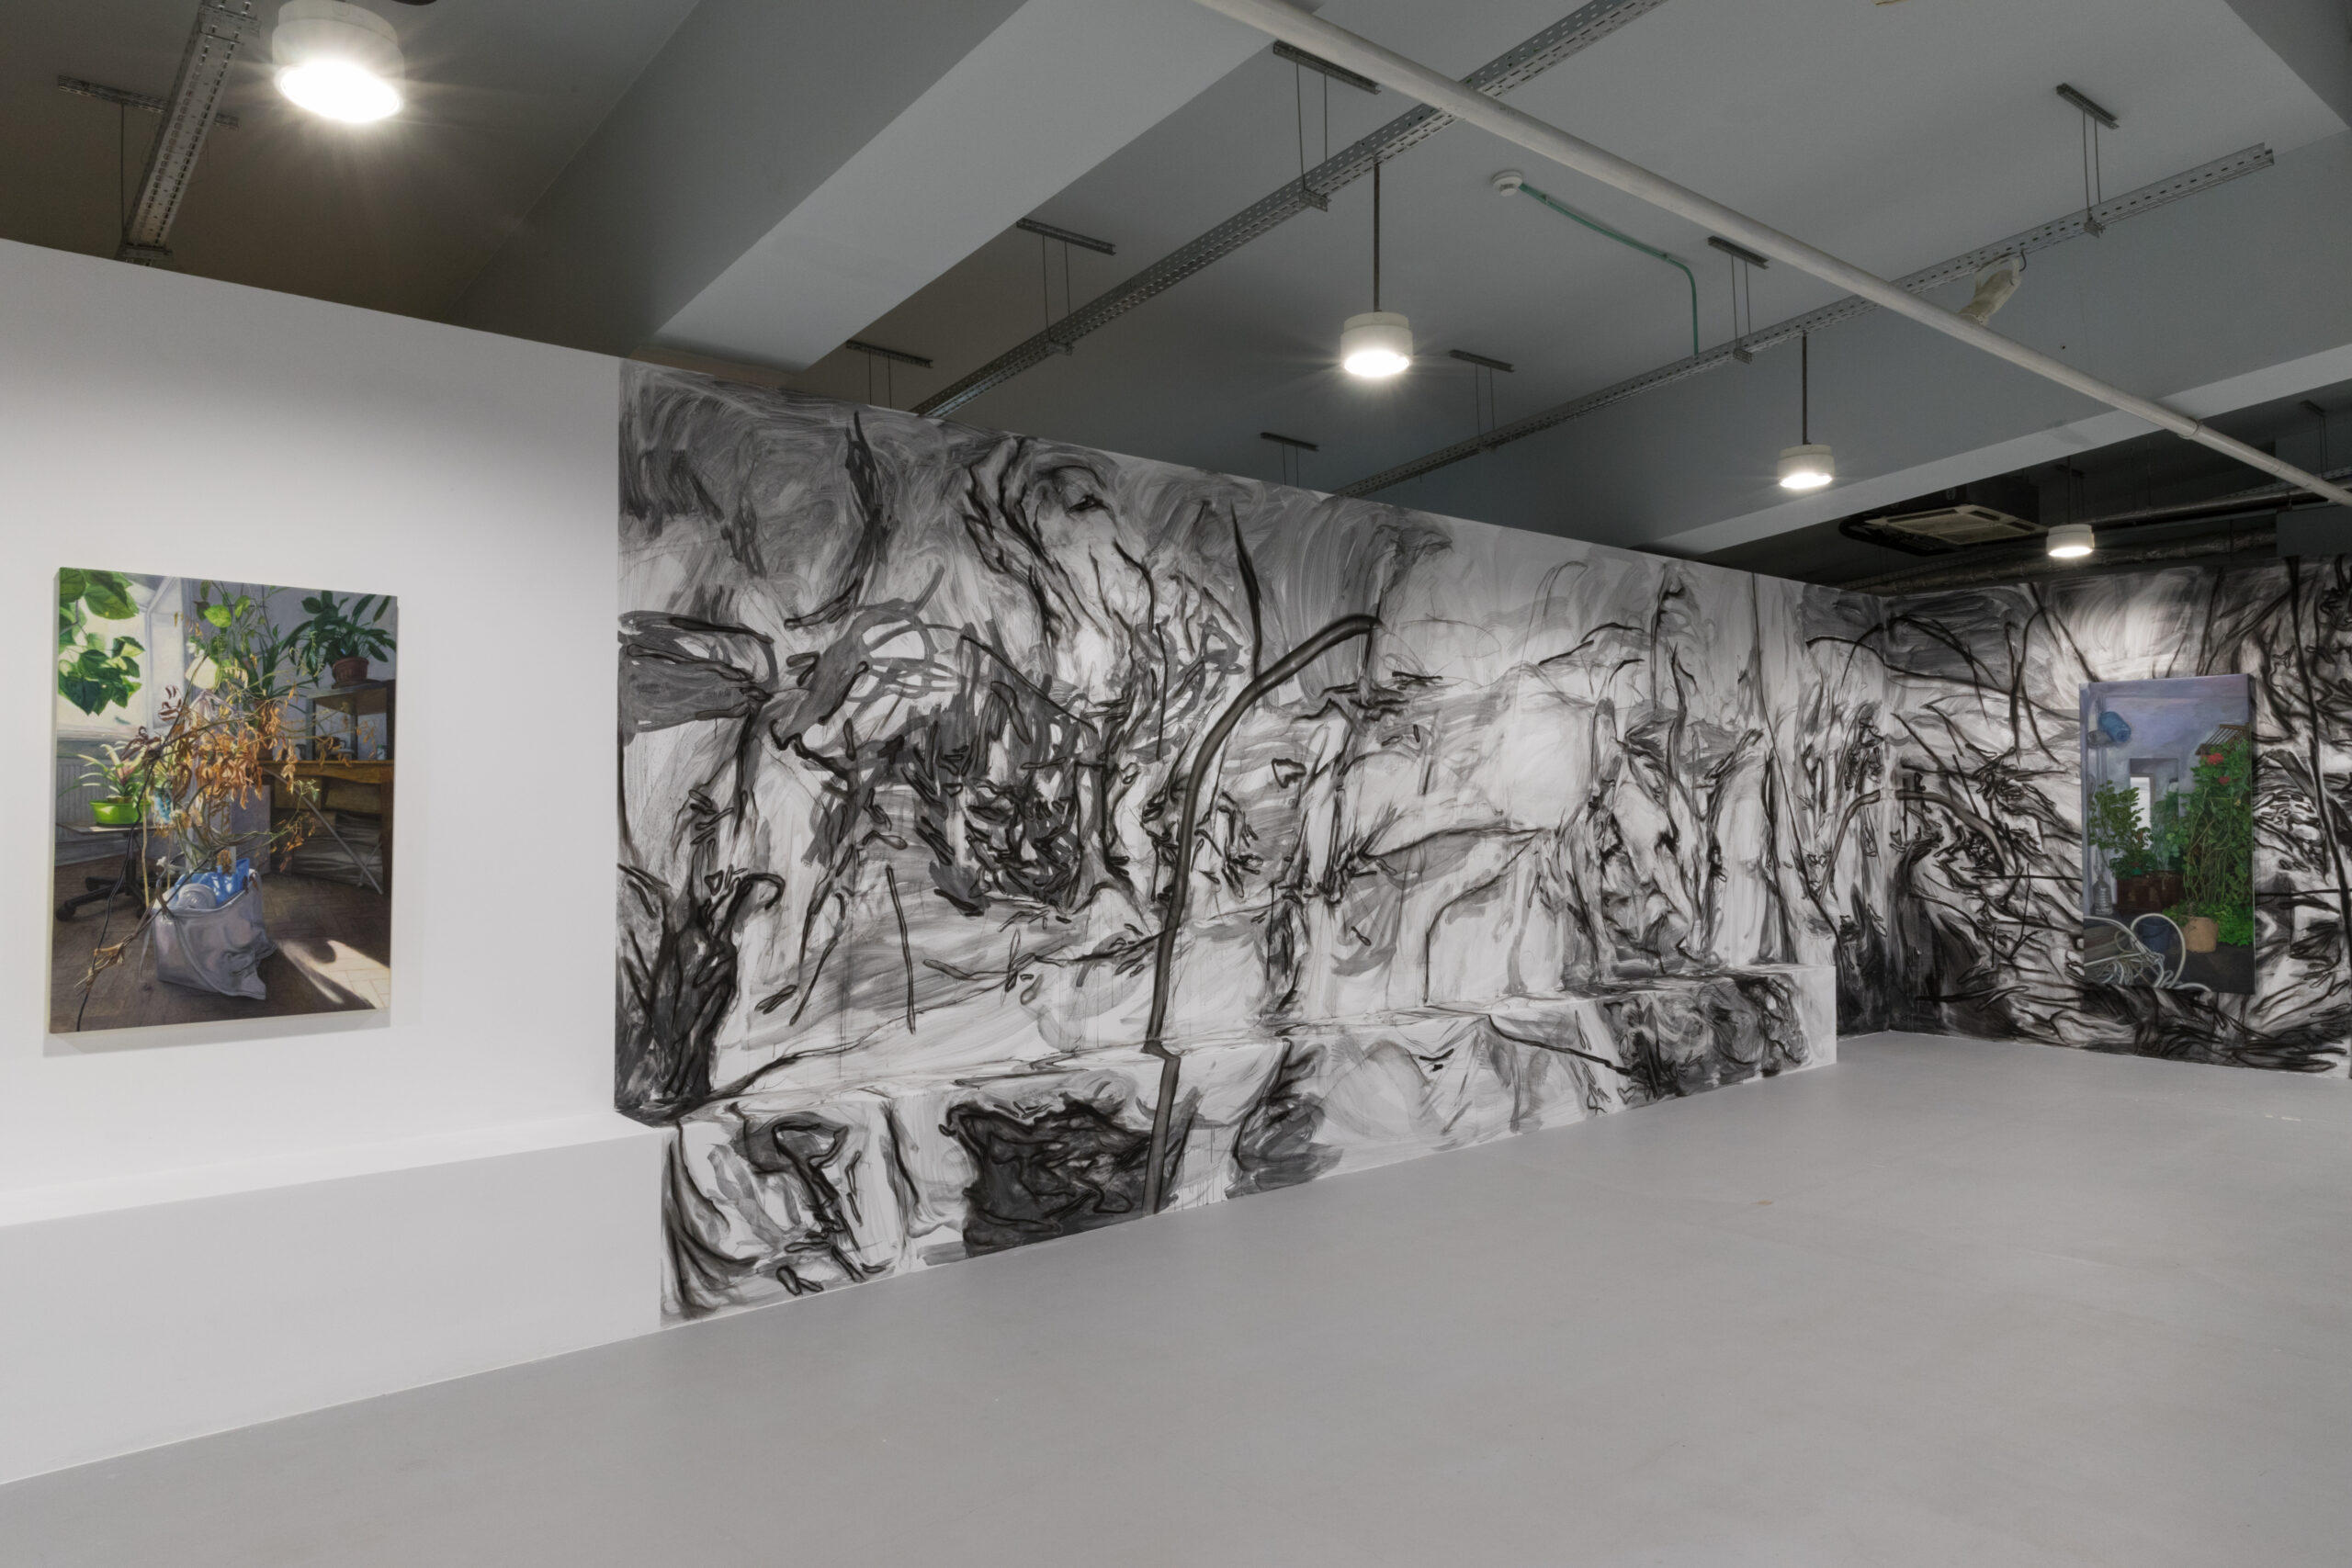 Mână stângă spre priveliște depărtată, expoziție personală de Ana Maria Micu, curatoare Simona Vilău, vedere cu instalația a două picturi în relație cu un desen mural